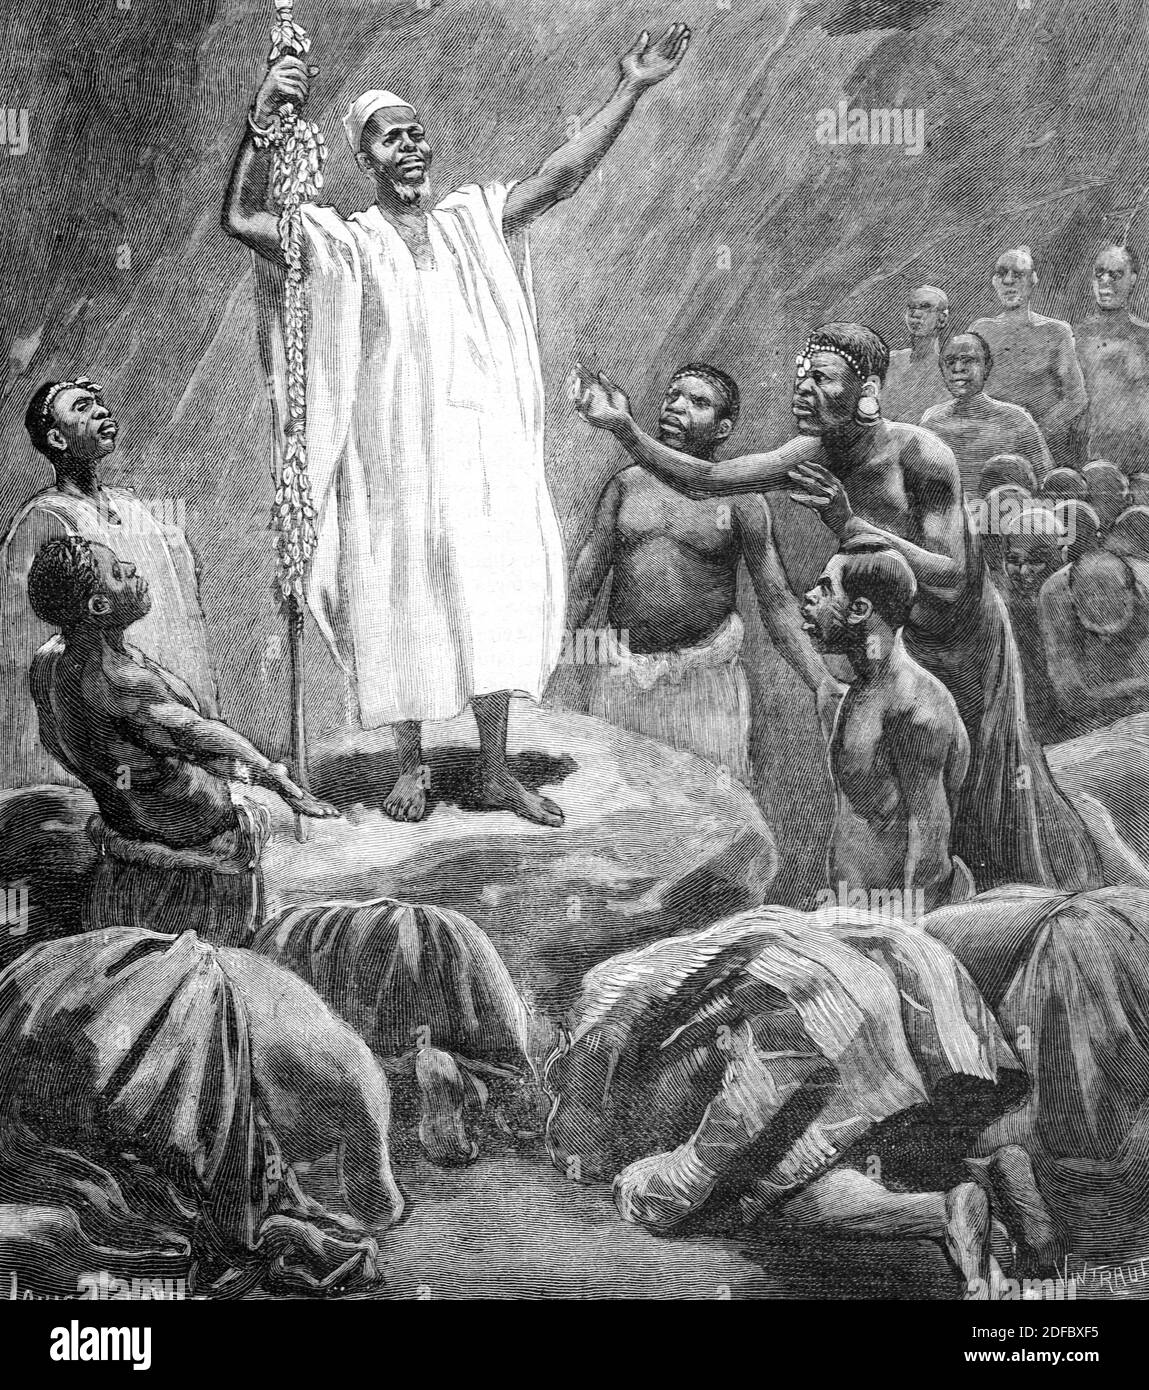 Pagan Priest Bubi gens Île de Bioko Guinée équatoriale Afrique centrale (Engr 1895) Illustration ancienne ou gravure Banque D'Images